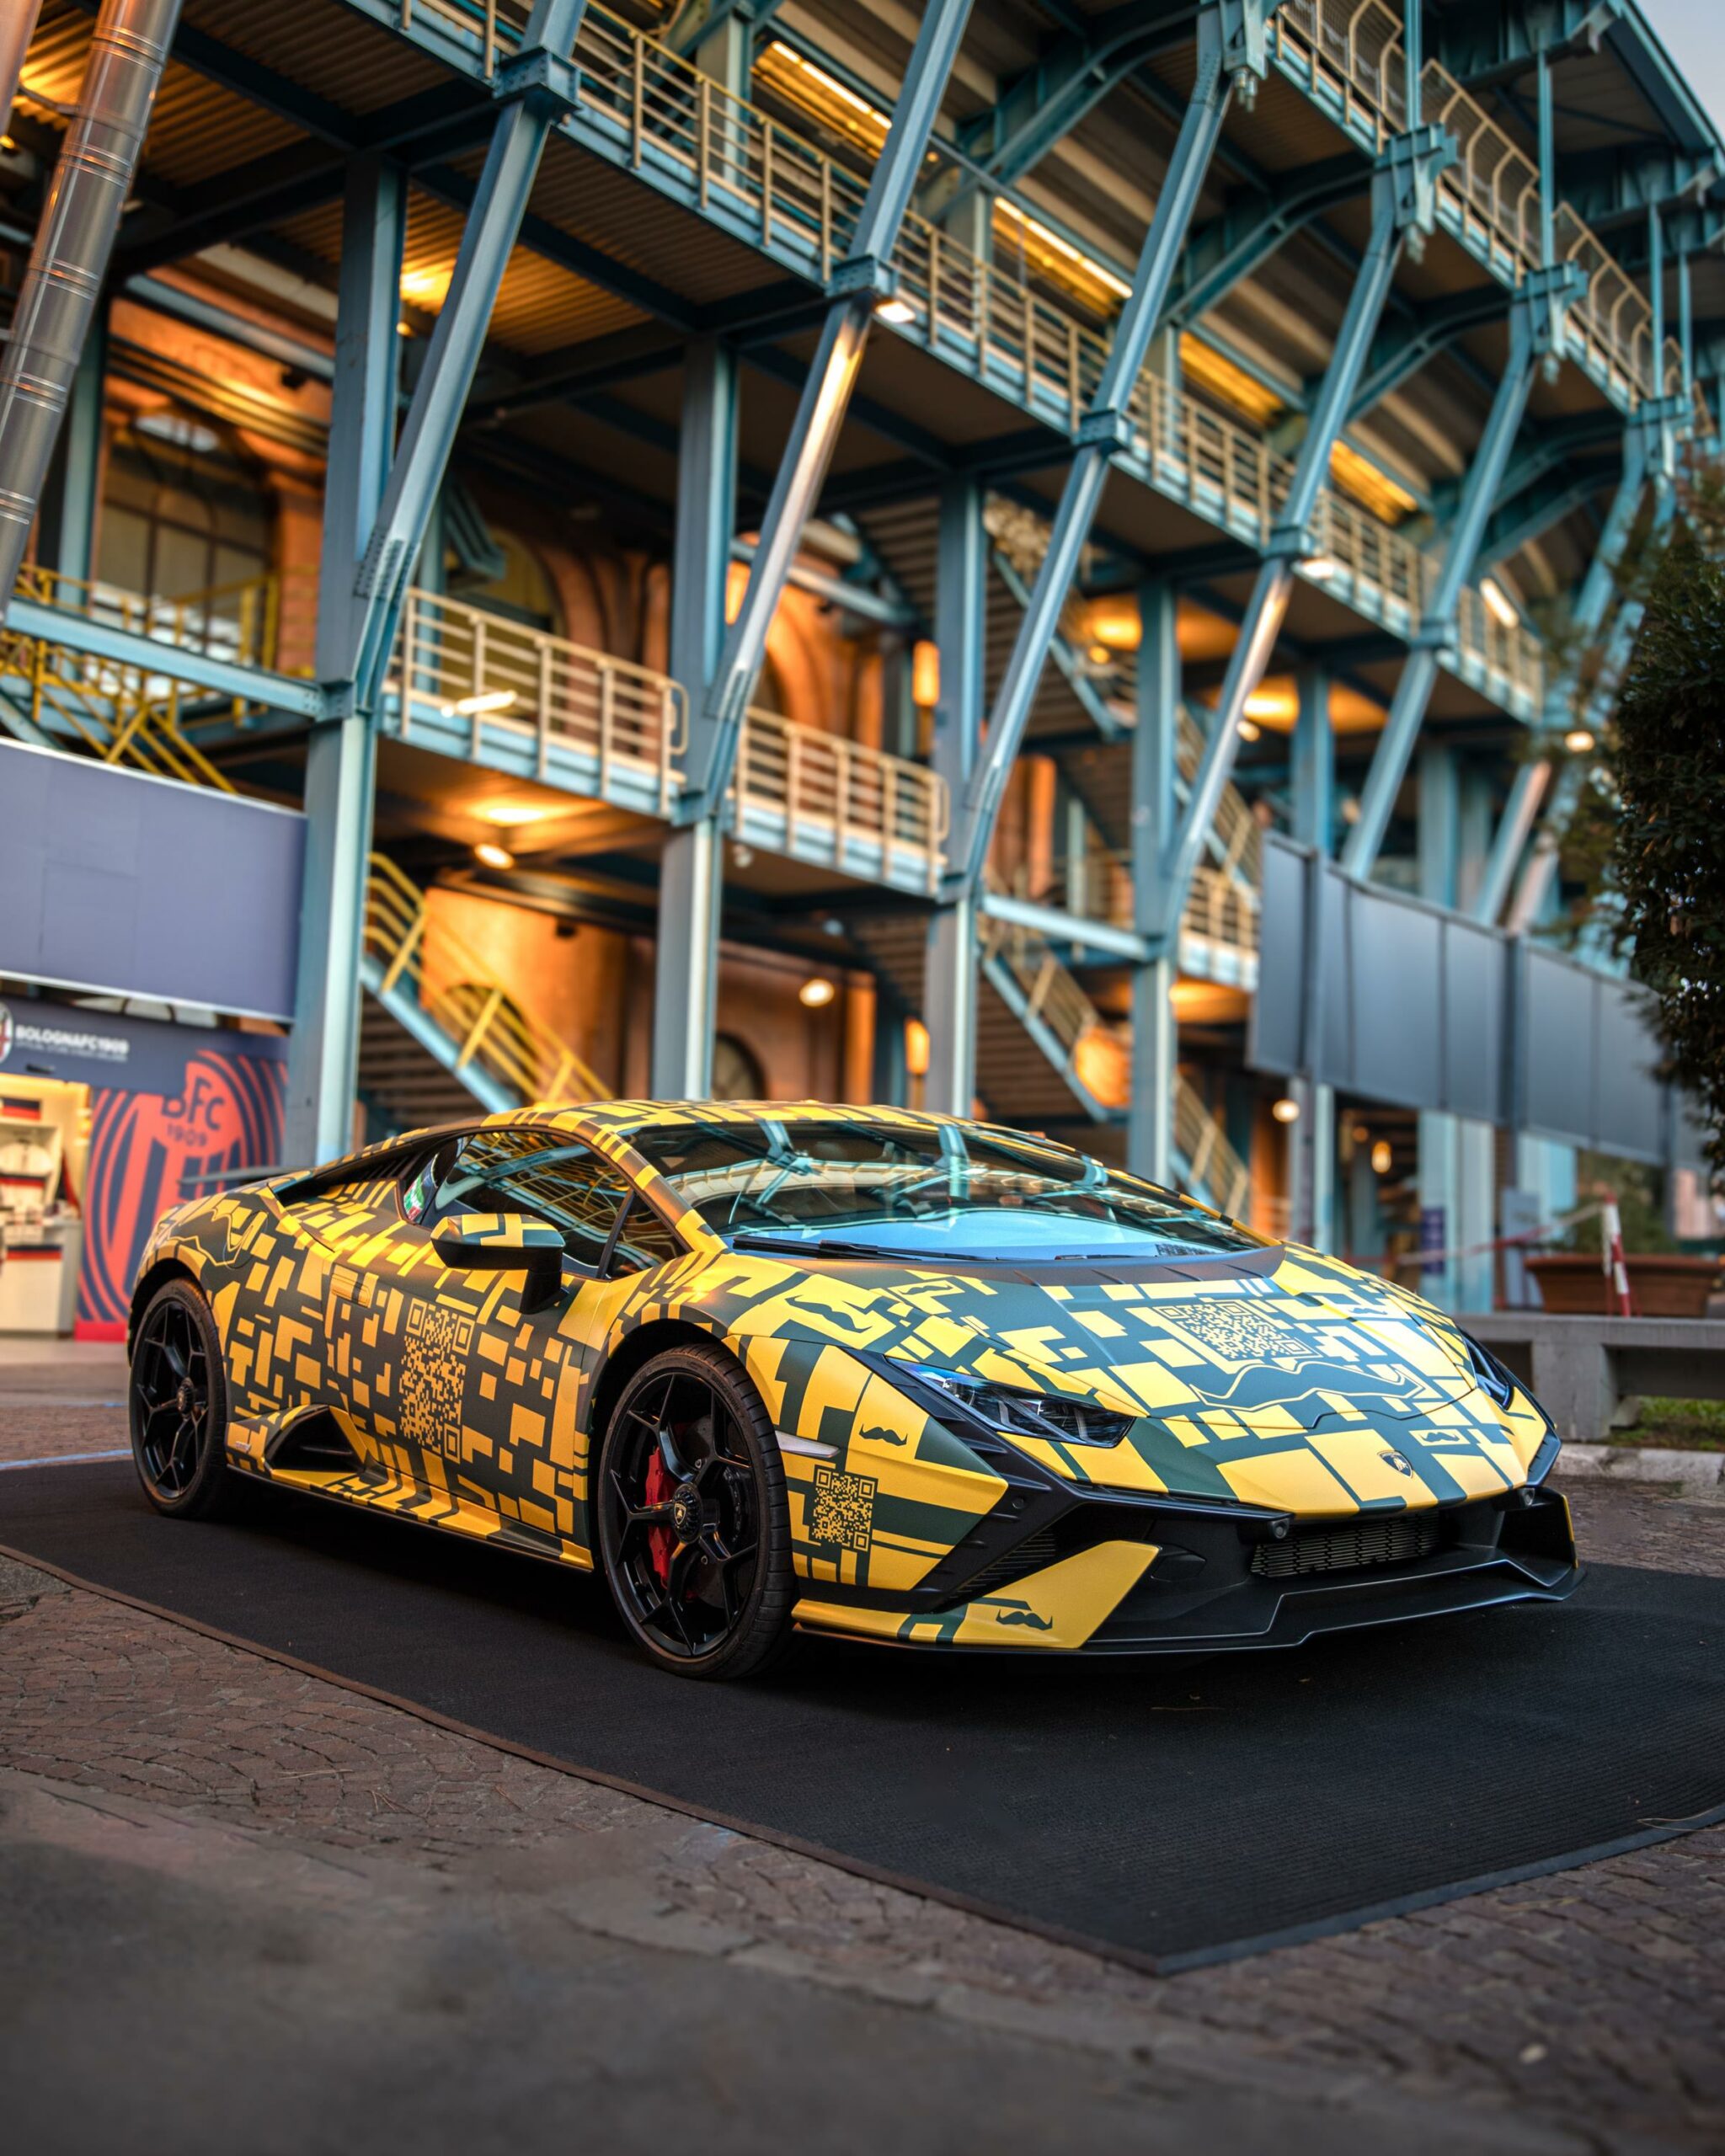 Oltre 1600 Lamborghini nelle strade di tutto il mondo a sostegno di Movember